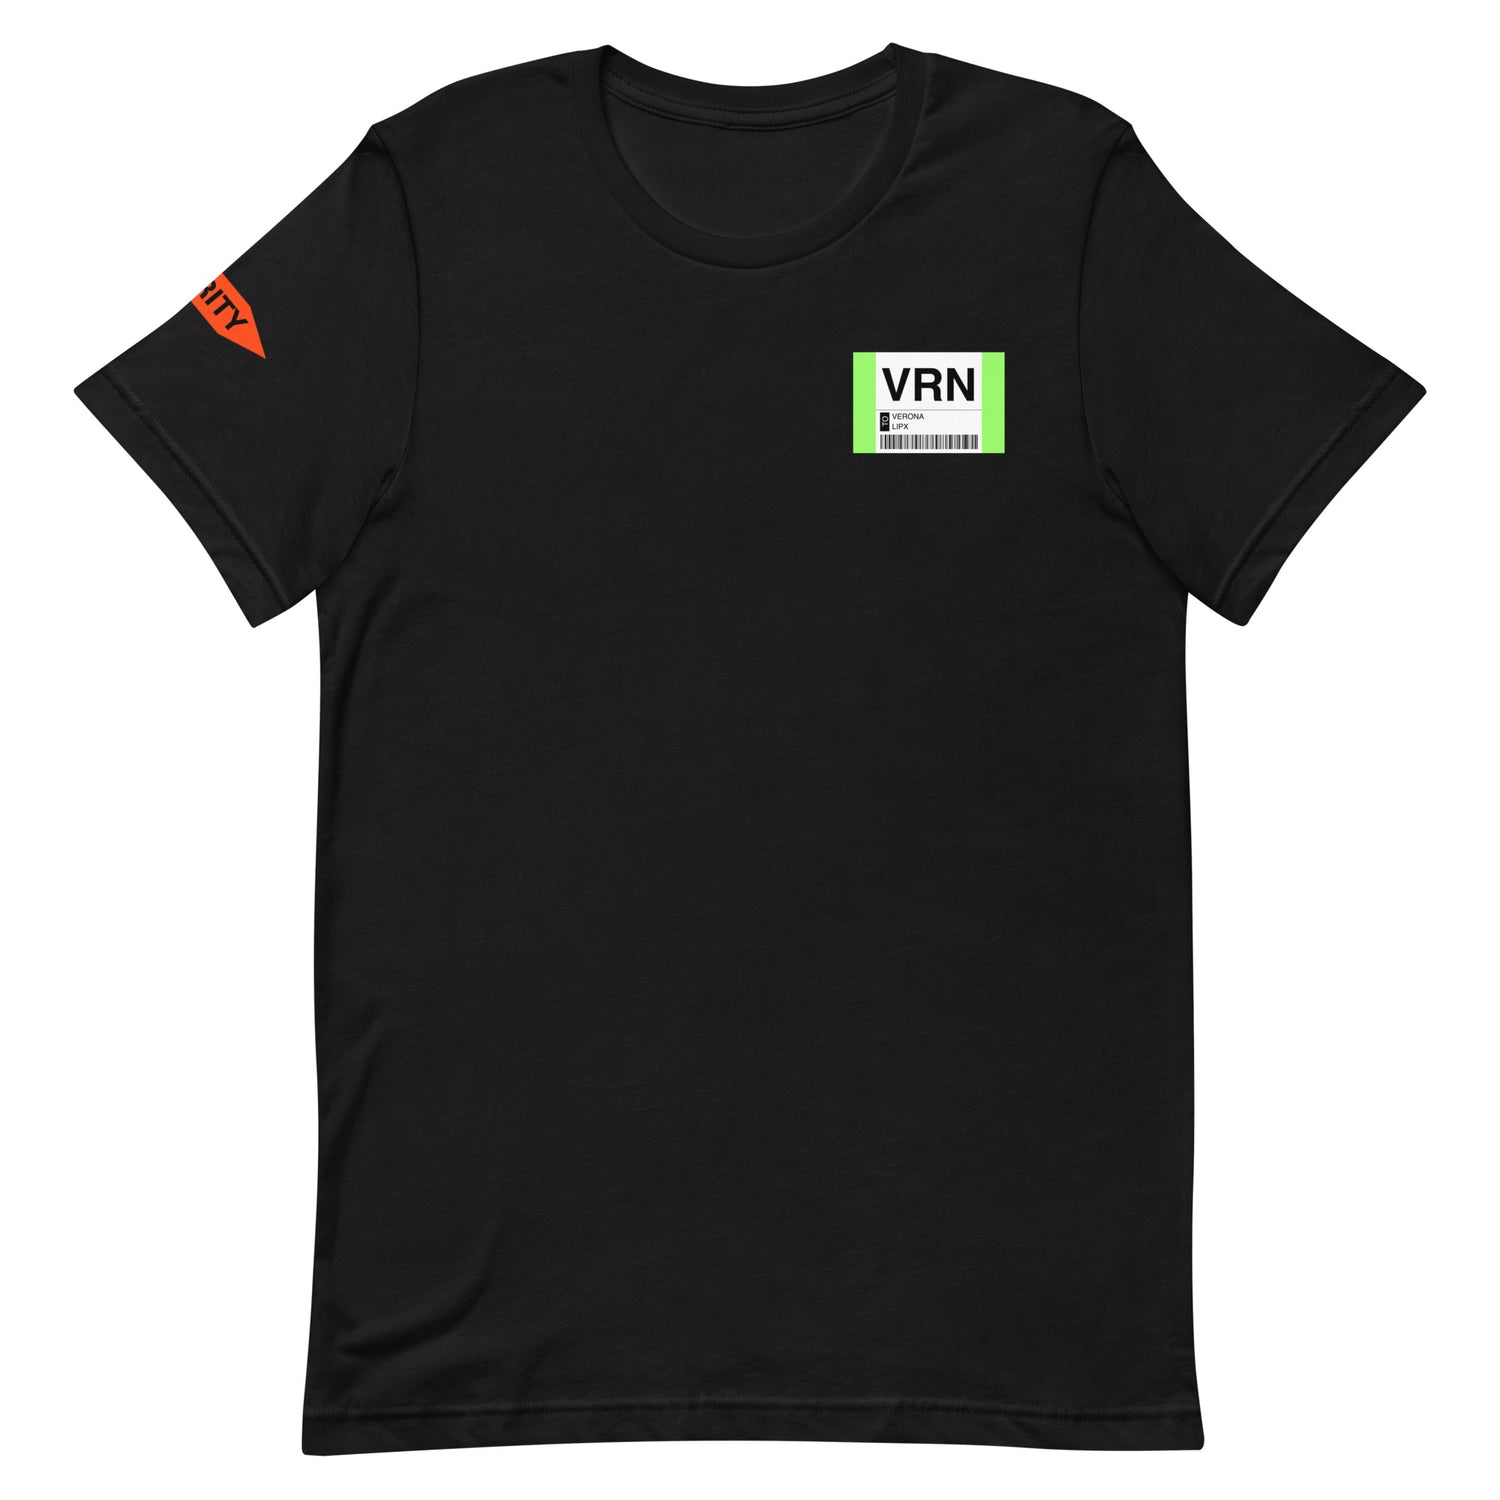 RVCA Tag T-Shirt - Black